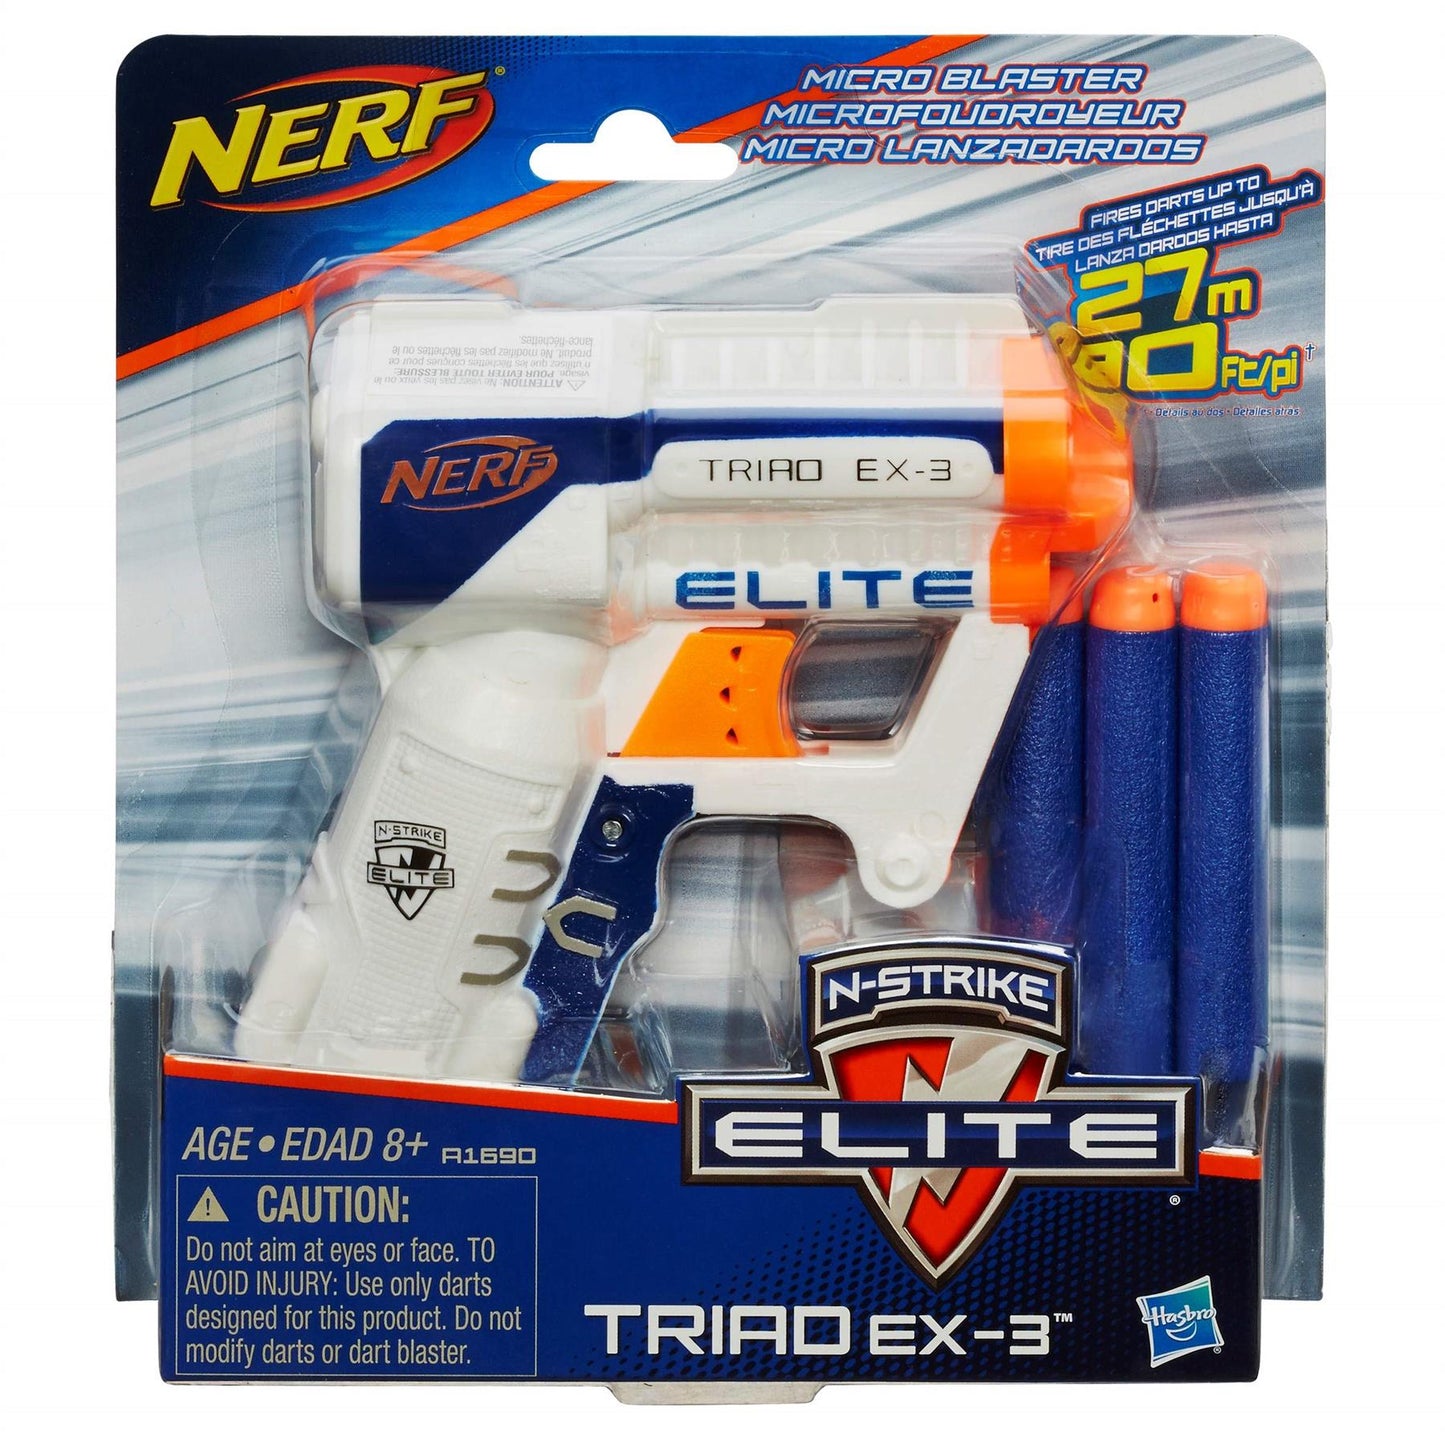 Nerf N-Strike Elite Triad EX-3 Blaster Compact 3-Dart Blaster